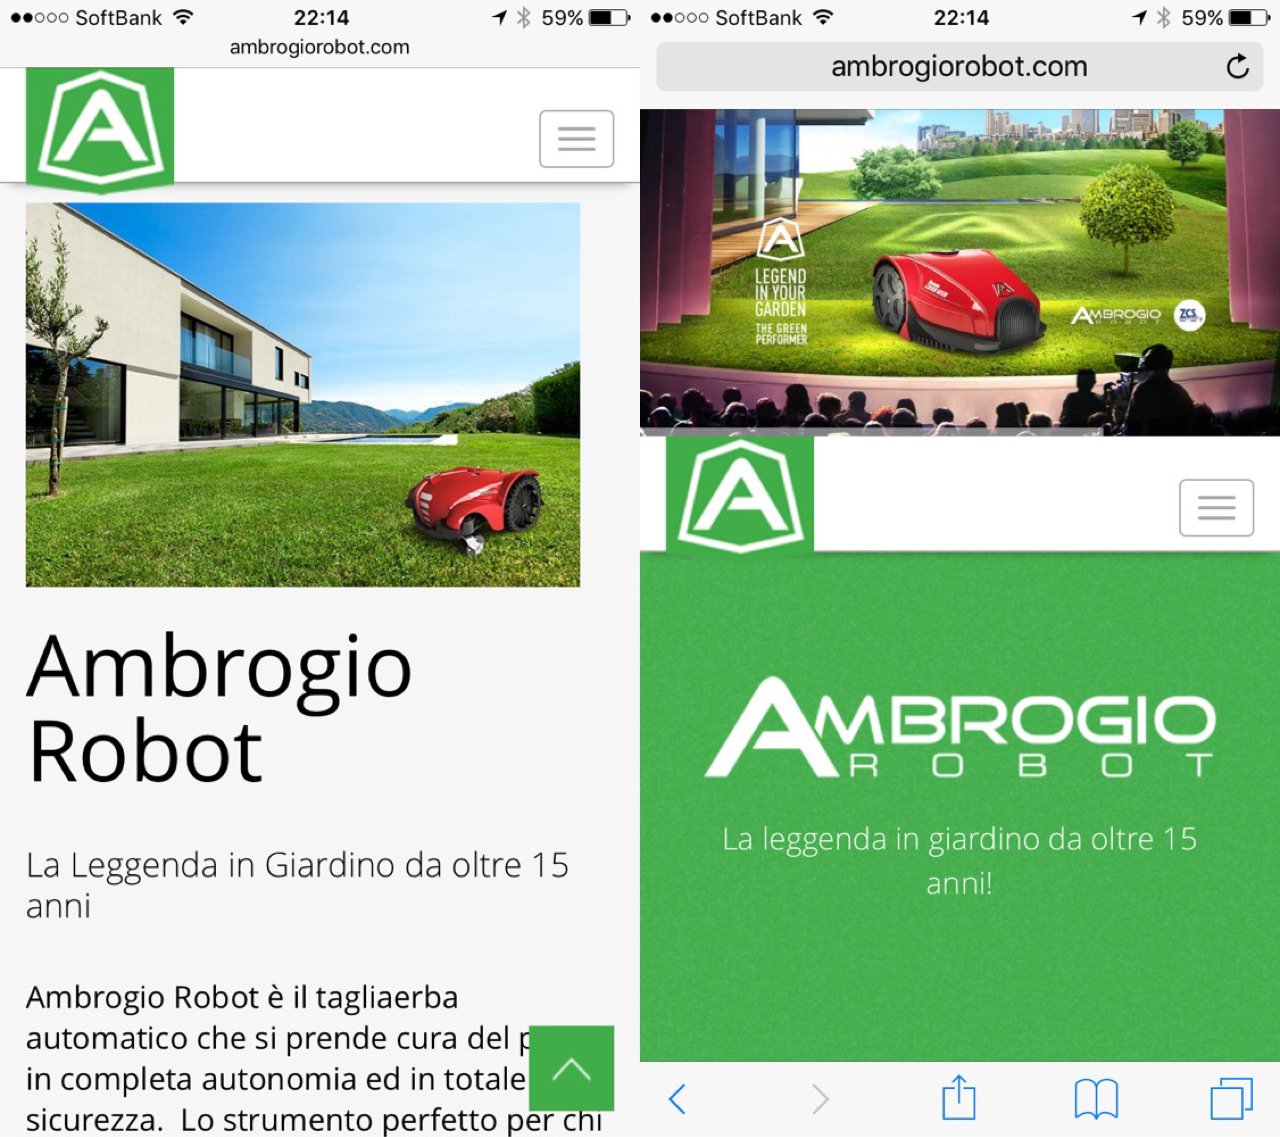 全自動芝刈り機ロボット。

Tagliaerba Automatico | Ambrogio Robot https://t.co/yuIb6mdtBc